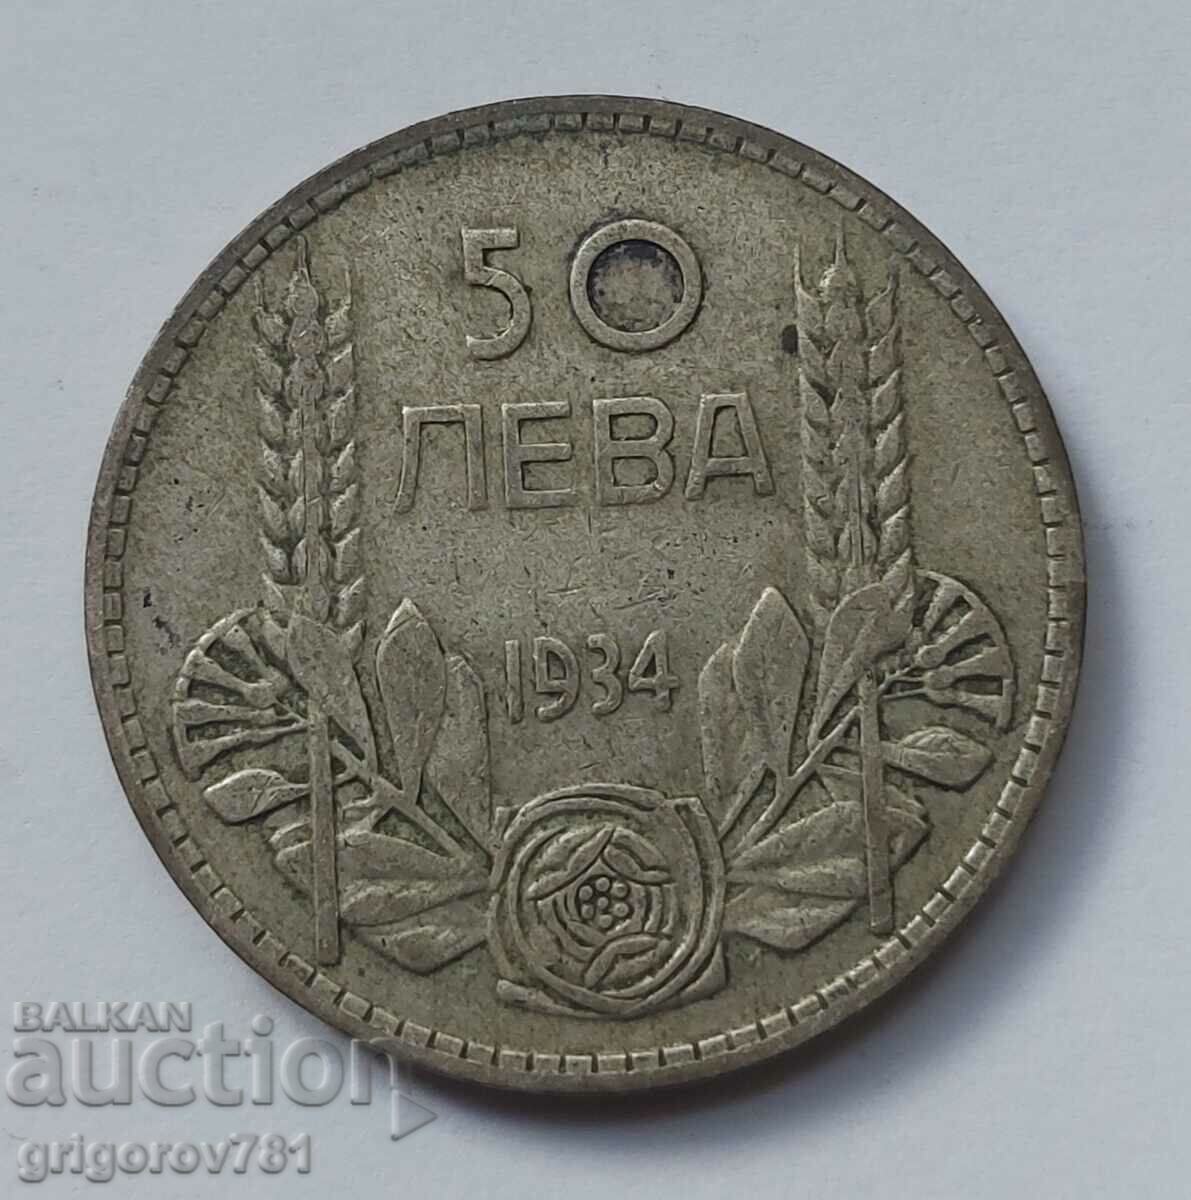 50 leva silver Bulgaria 1934 - silver coin #3